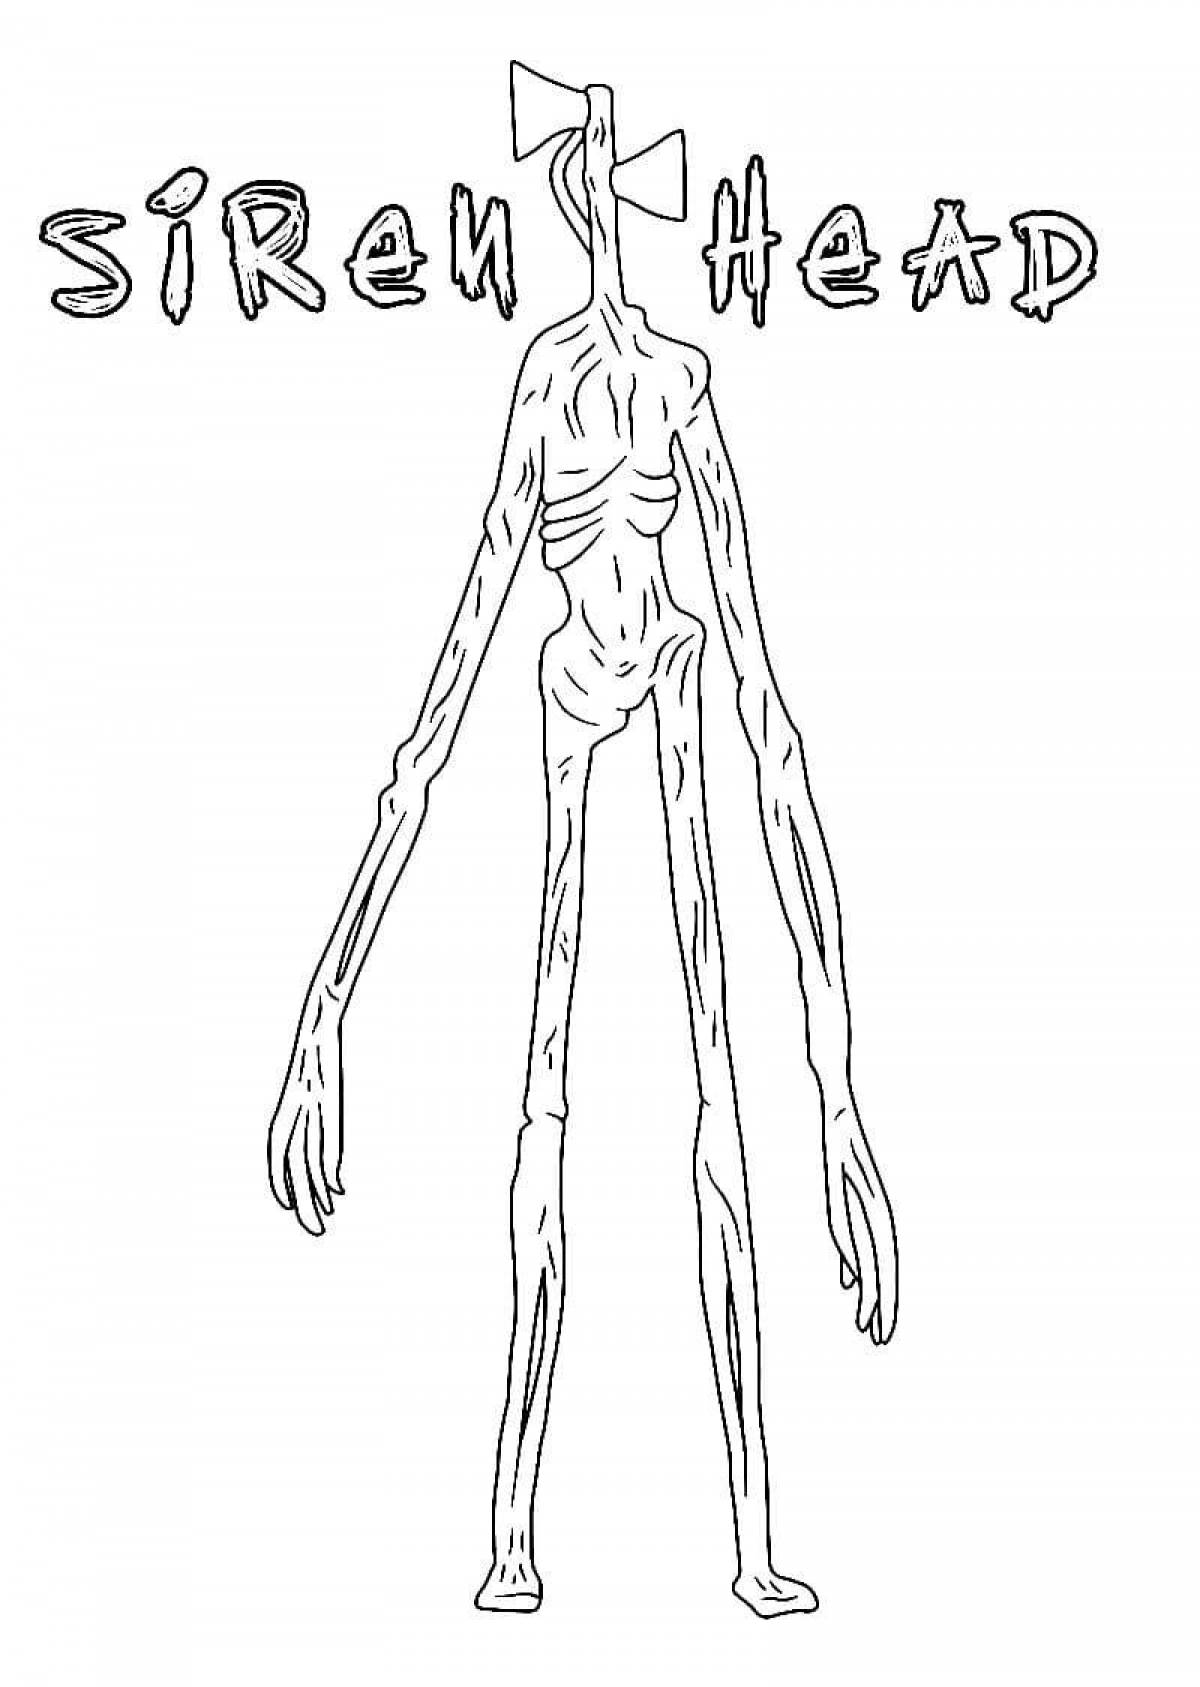 Siren head #2